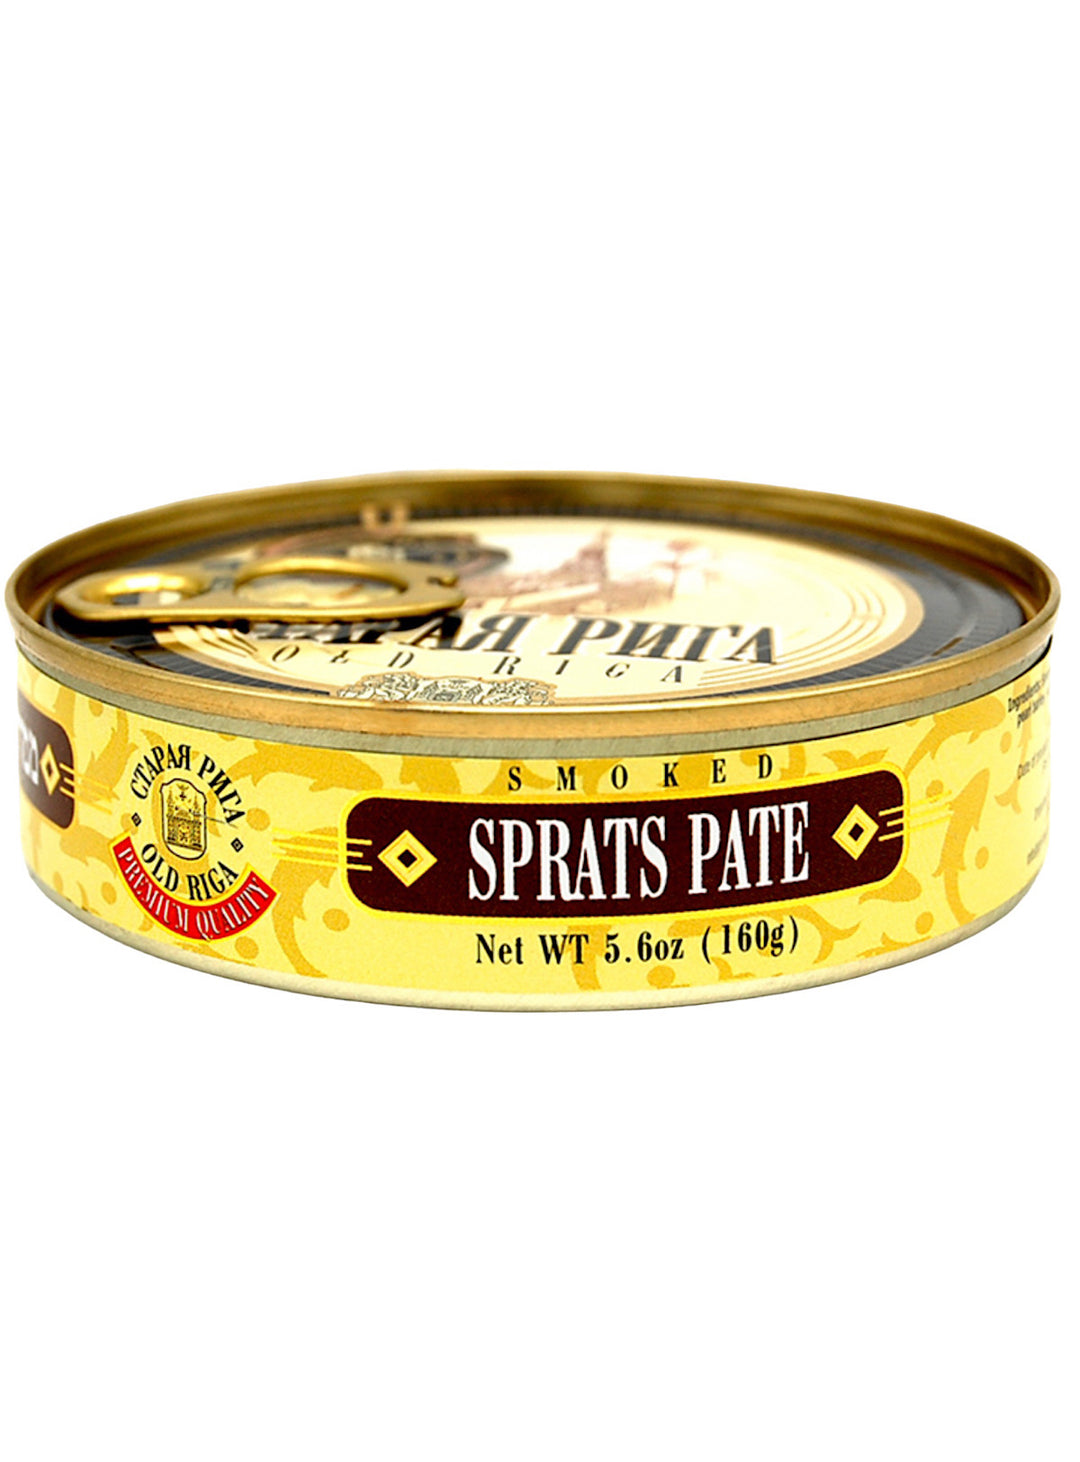 Smoked Sprats Pate - Old Riga - 160g 5.6oz